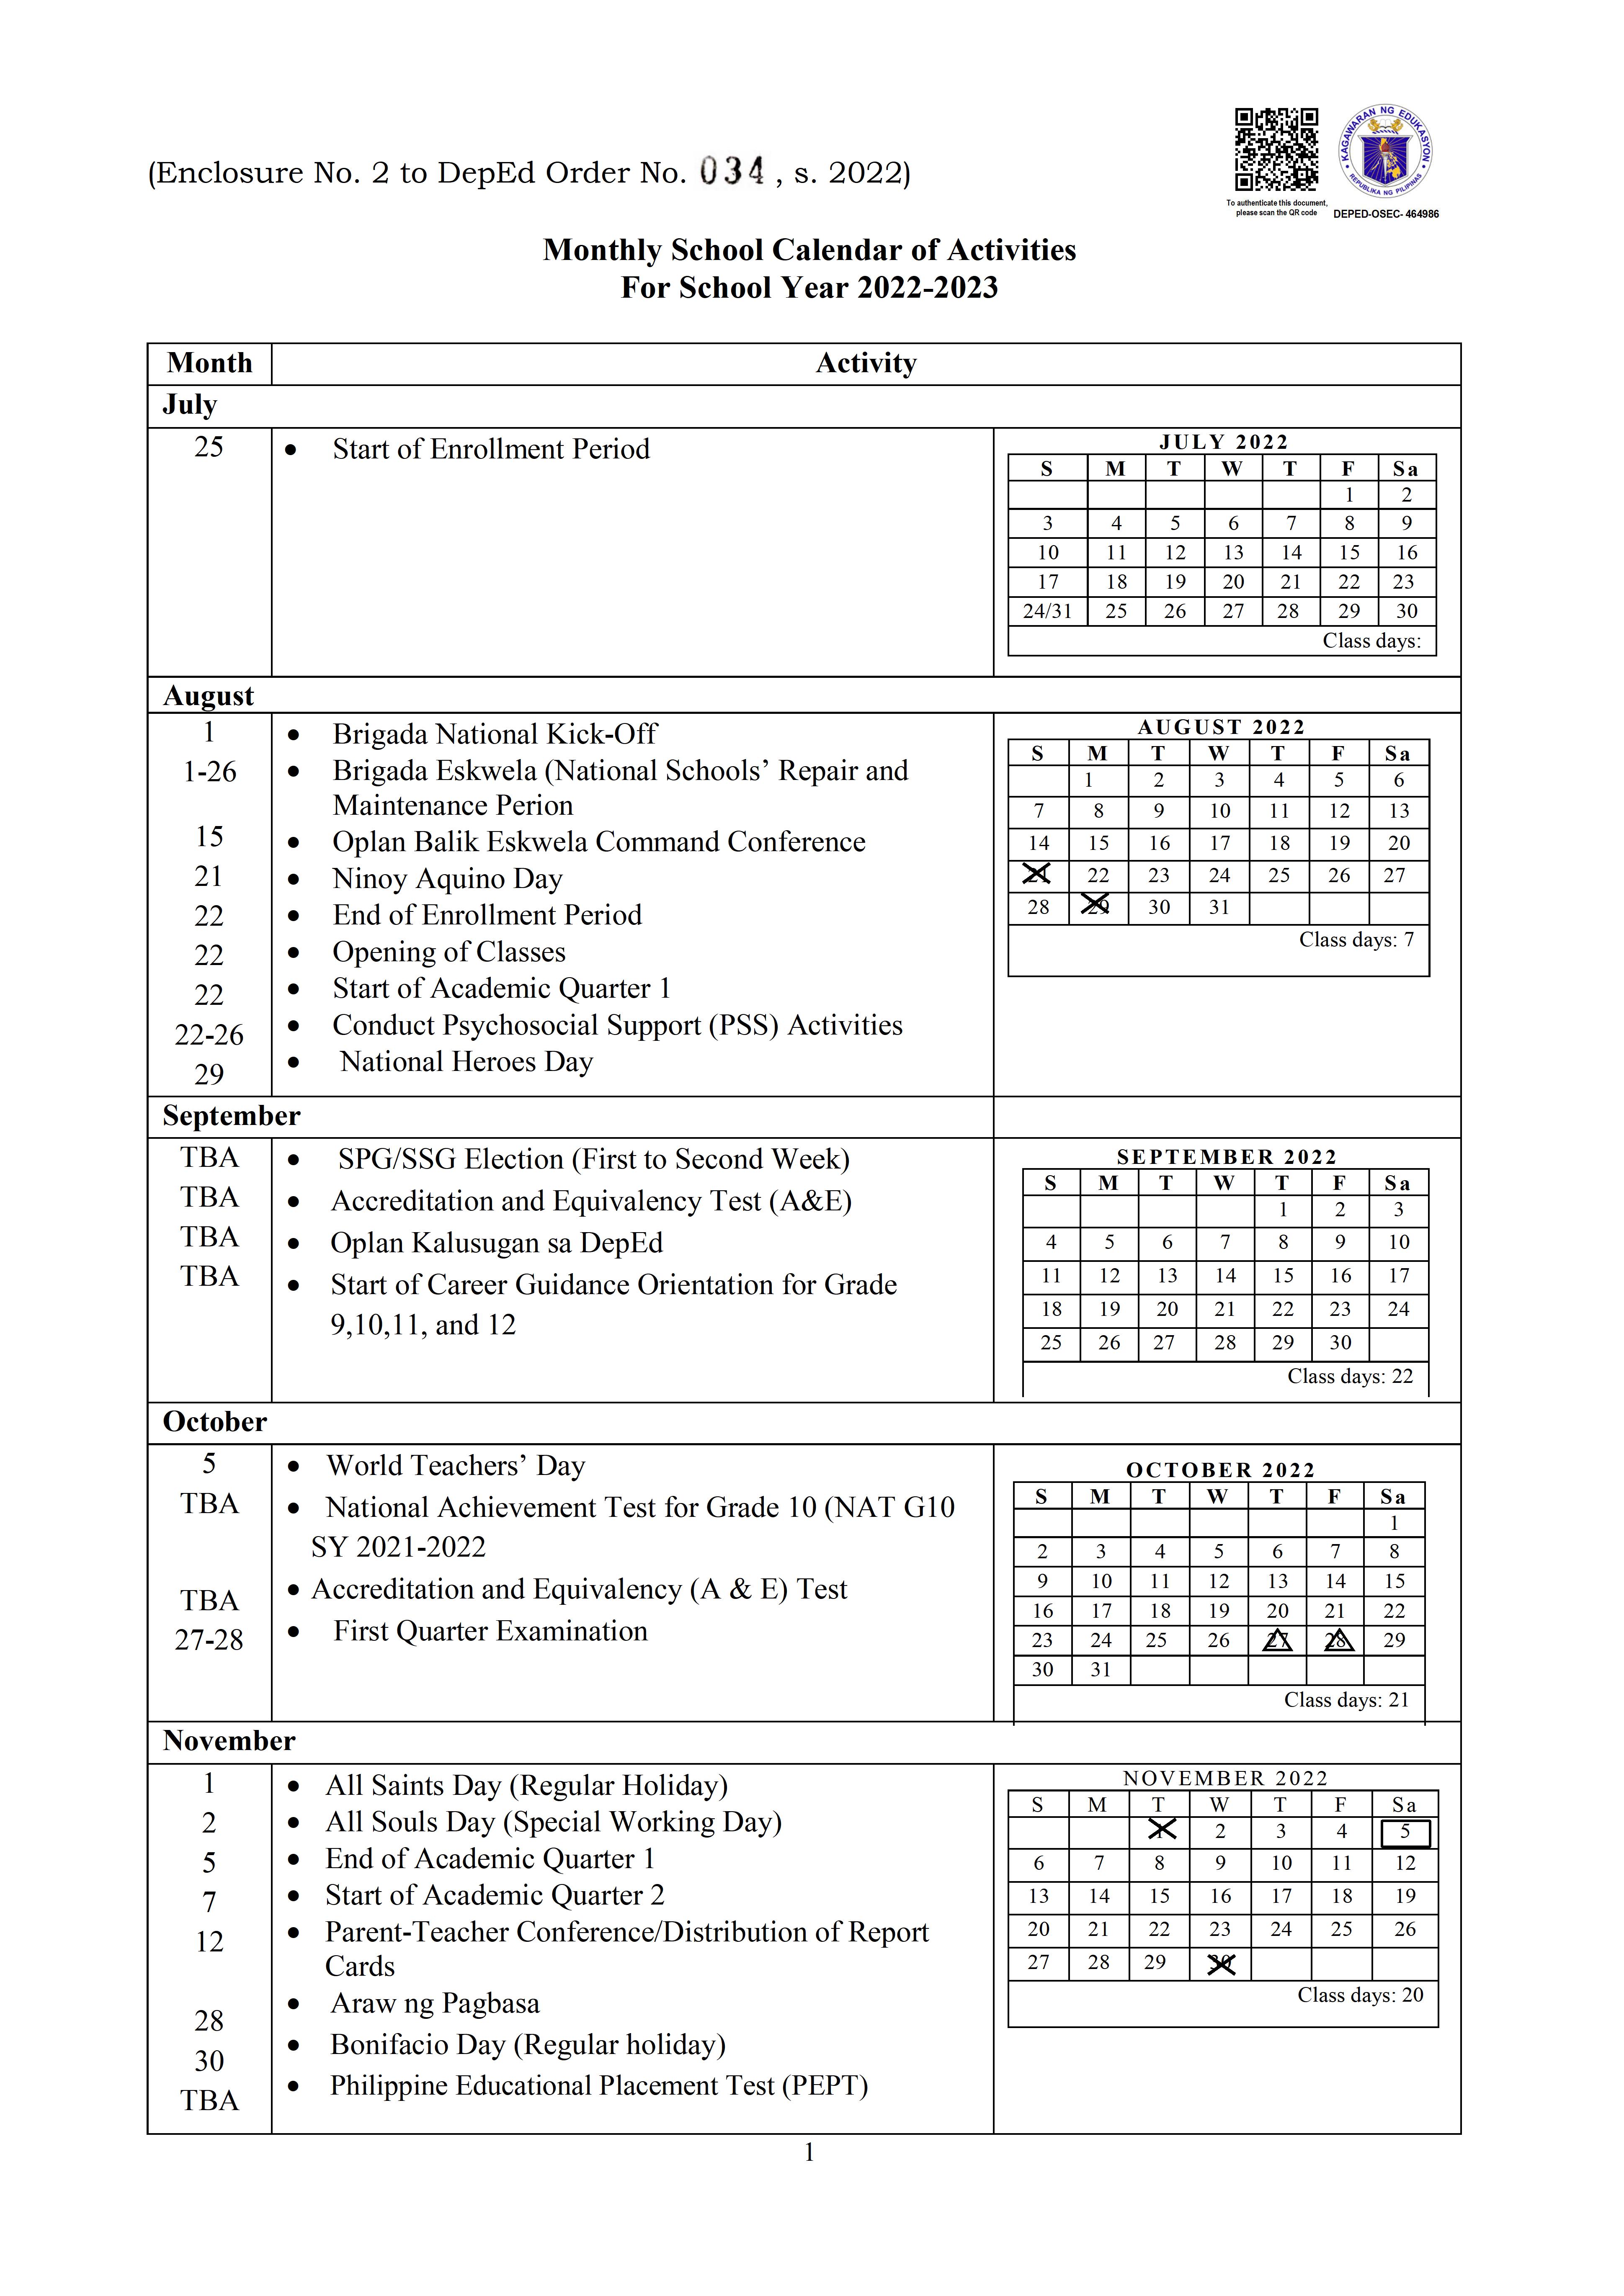 School Calendar 2023 2024 Deped Pdf Get Calendar 2023 Update